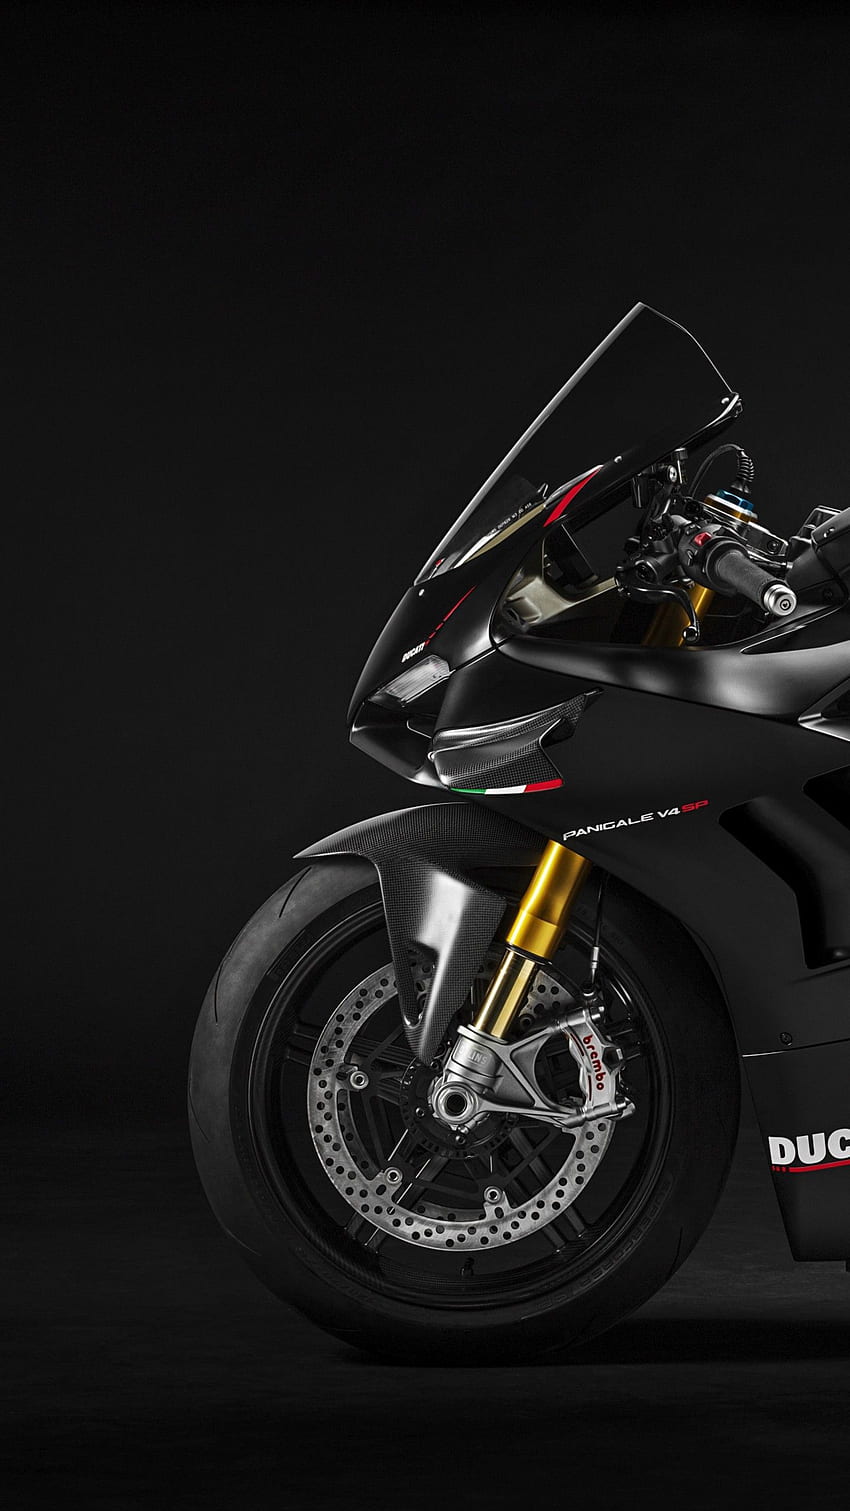 Soi siêu mô tô nhẹ nhất thế giới Ducati Superleggera V4 giá 100000USD   Tin tức iMotorbike